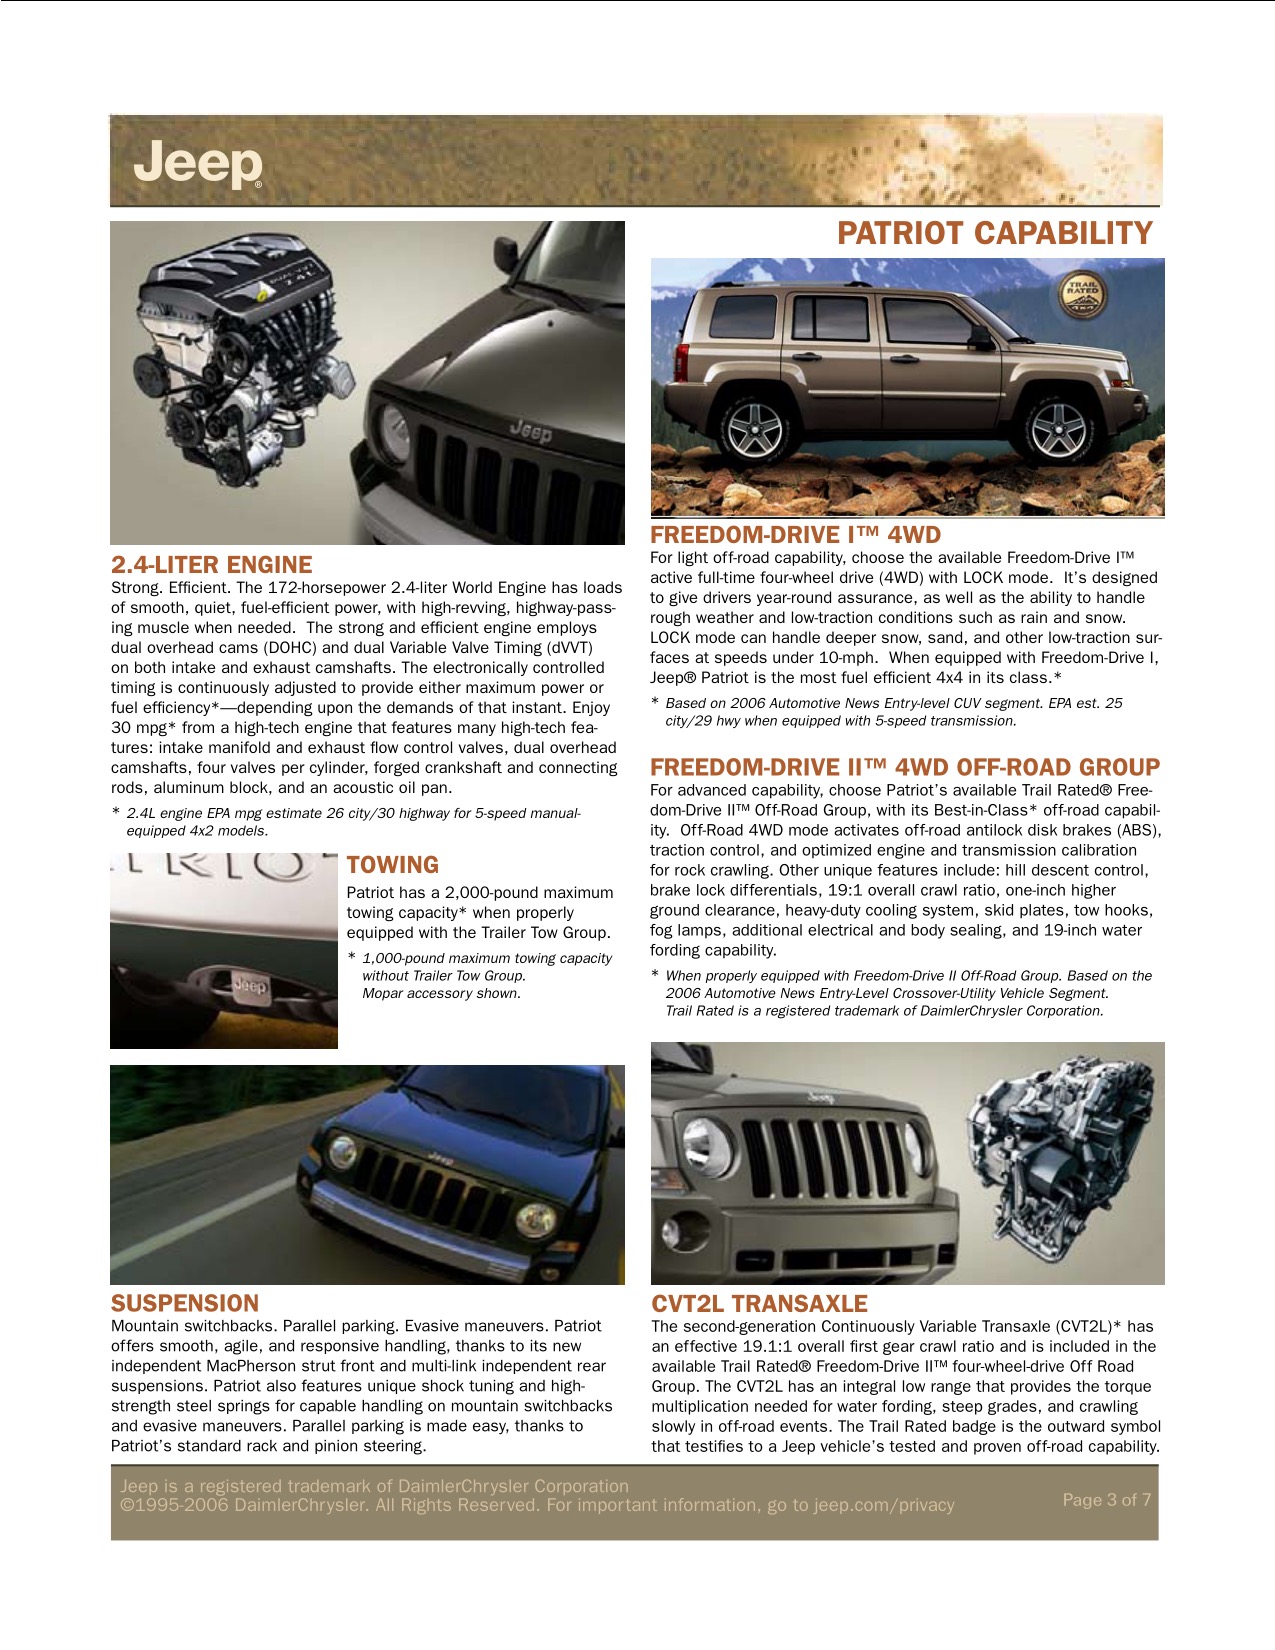 2007 Jeep Patriot Brochure Page 6